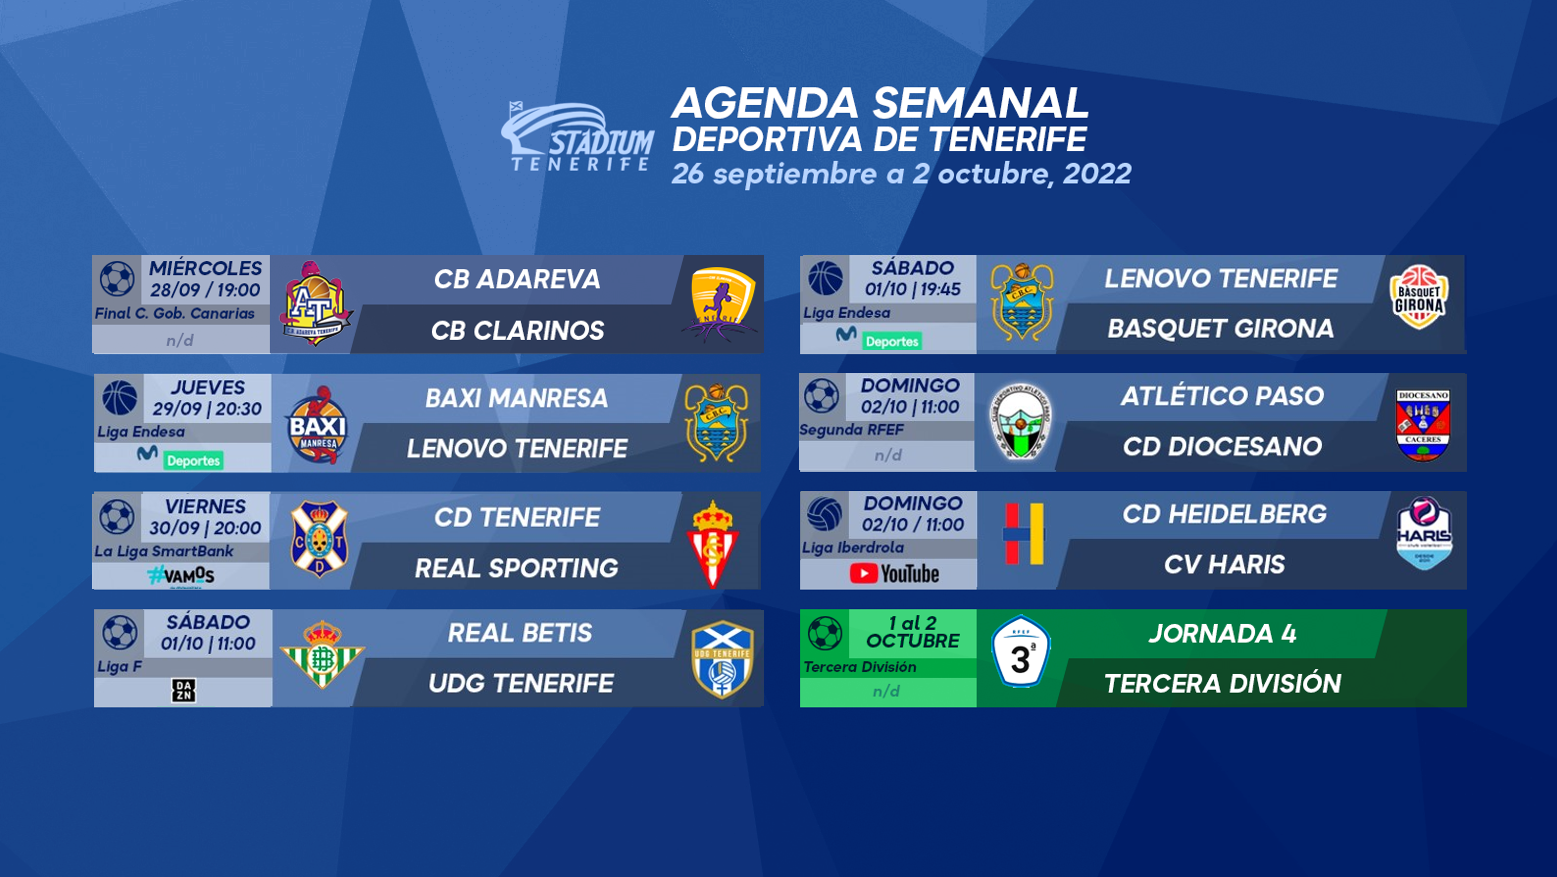 Agenda Semanal Deportiva de Tenerife (26 de septiembre de 2022 al 2 de octubre)